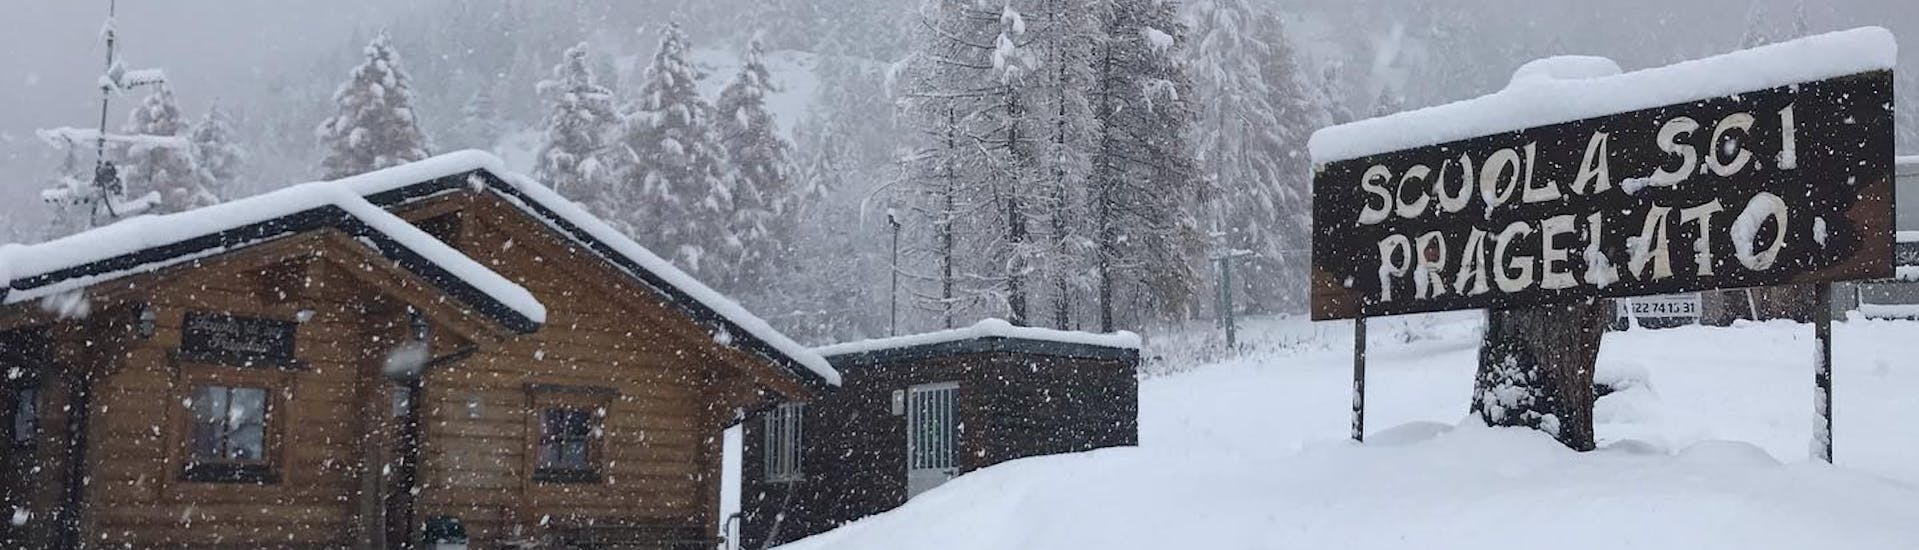 Incredibile immagine della scuola di sci coperta di neve a Pragelato. Ambiente perfetto per una delle lezioni private di sci per adulti per tutti i livelli. 